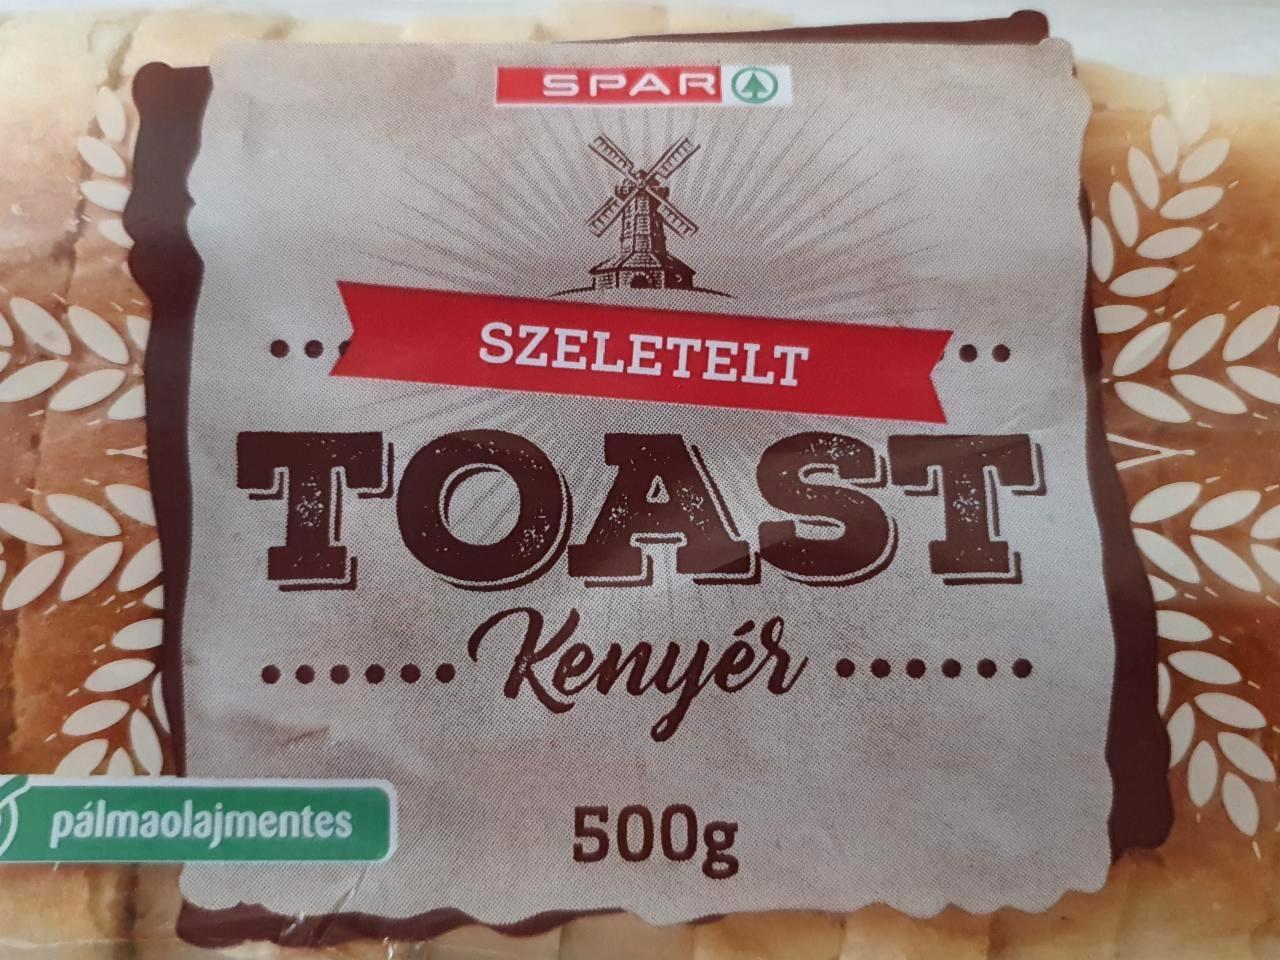 Képek - Szeletelt toast kenyér Spar